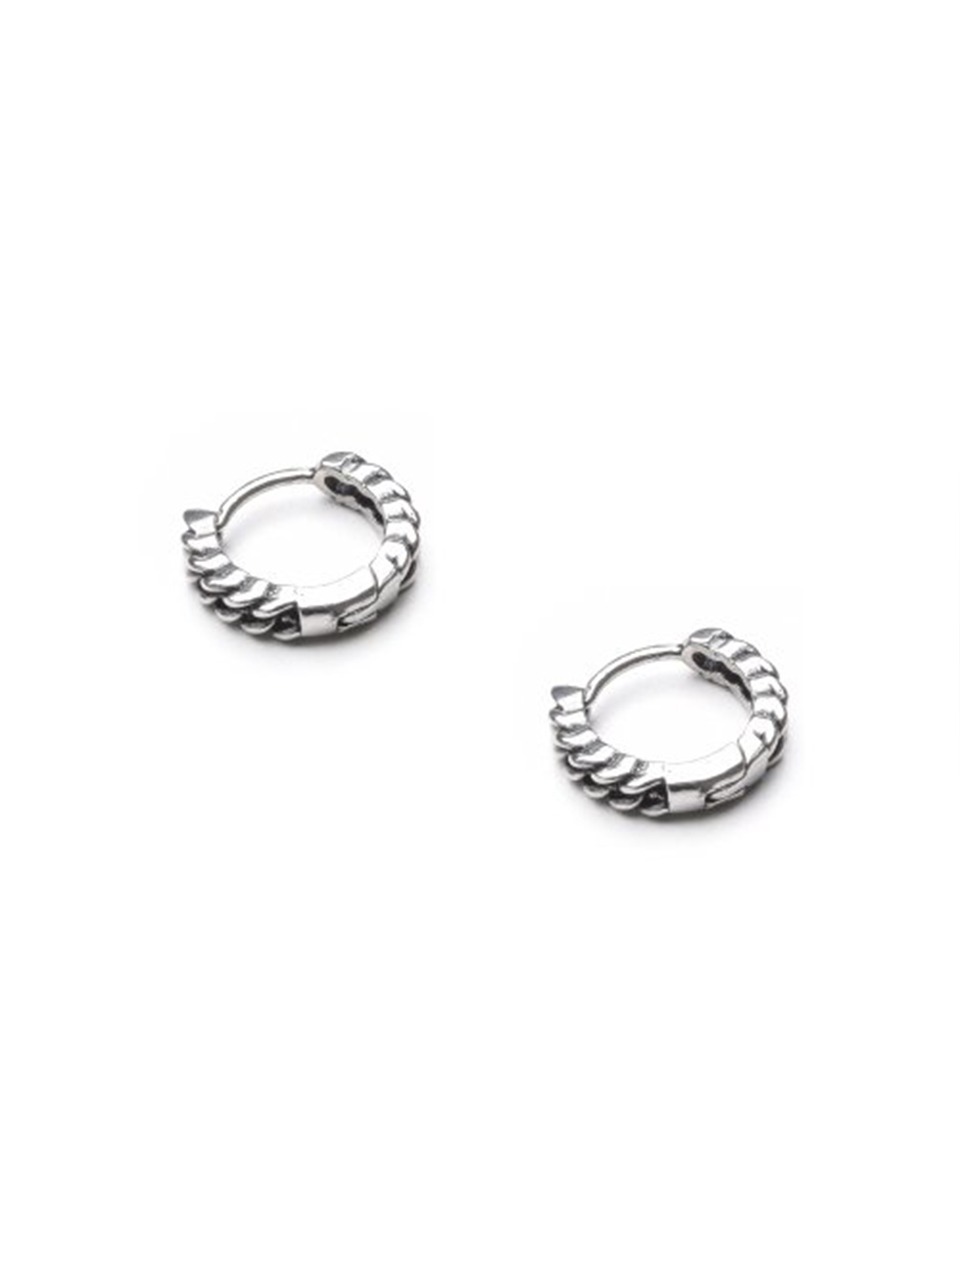 BA042 Twist chain earrings [Surgical steel]